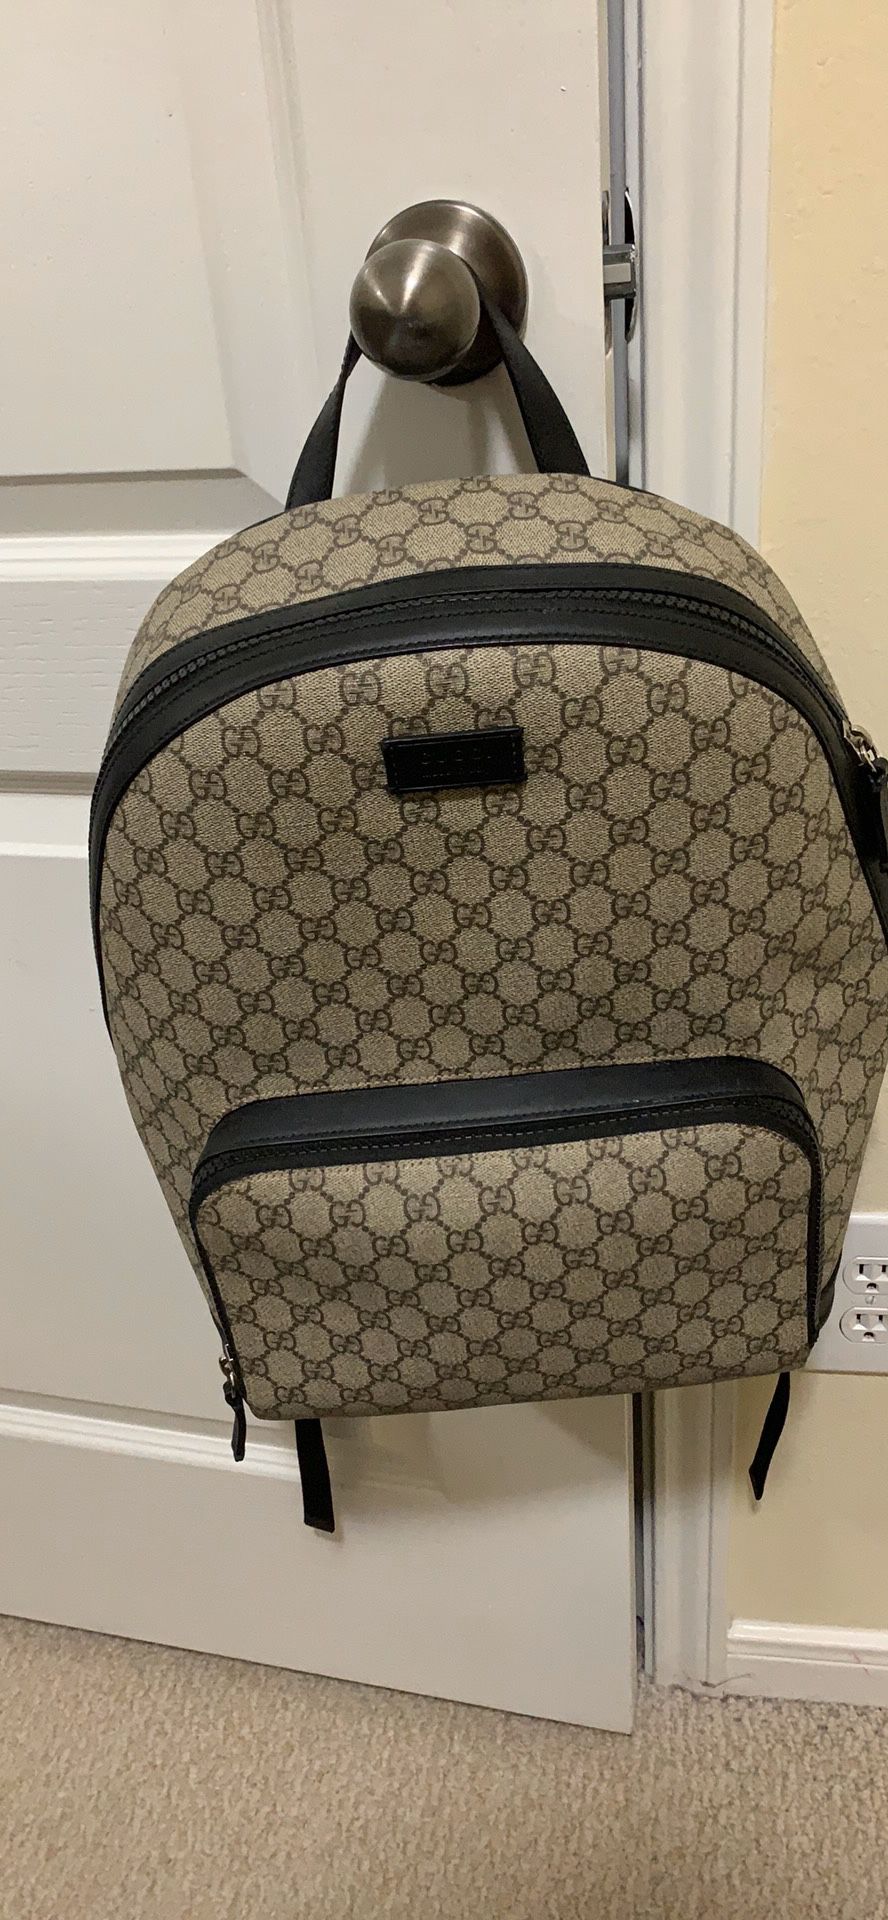 Gucci book bag